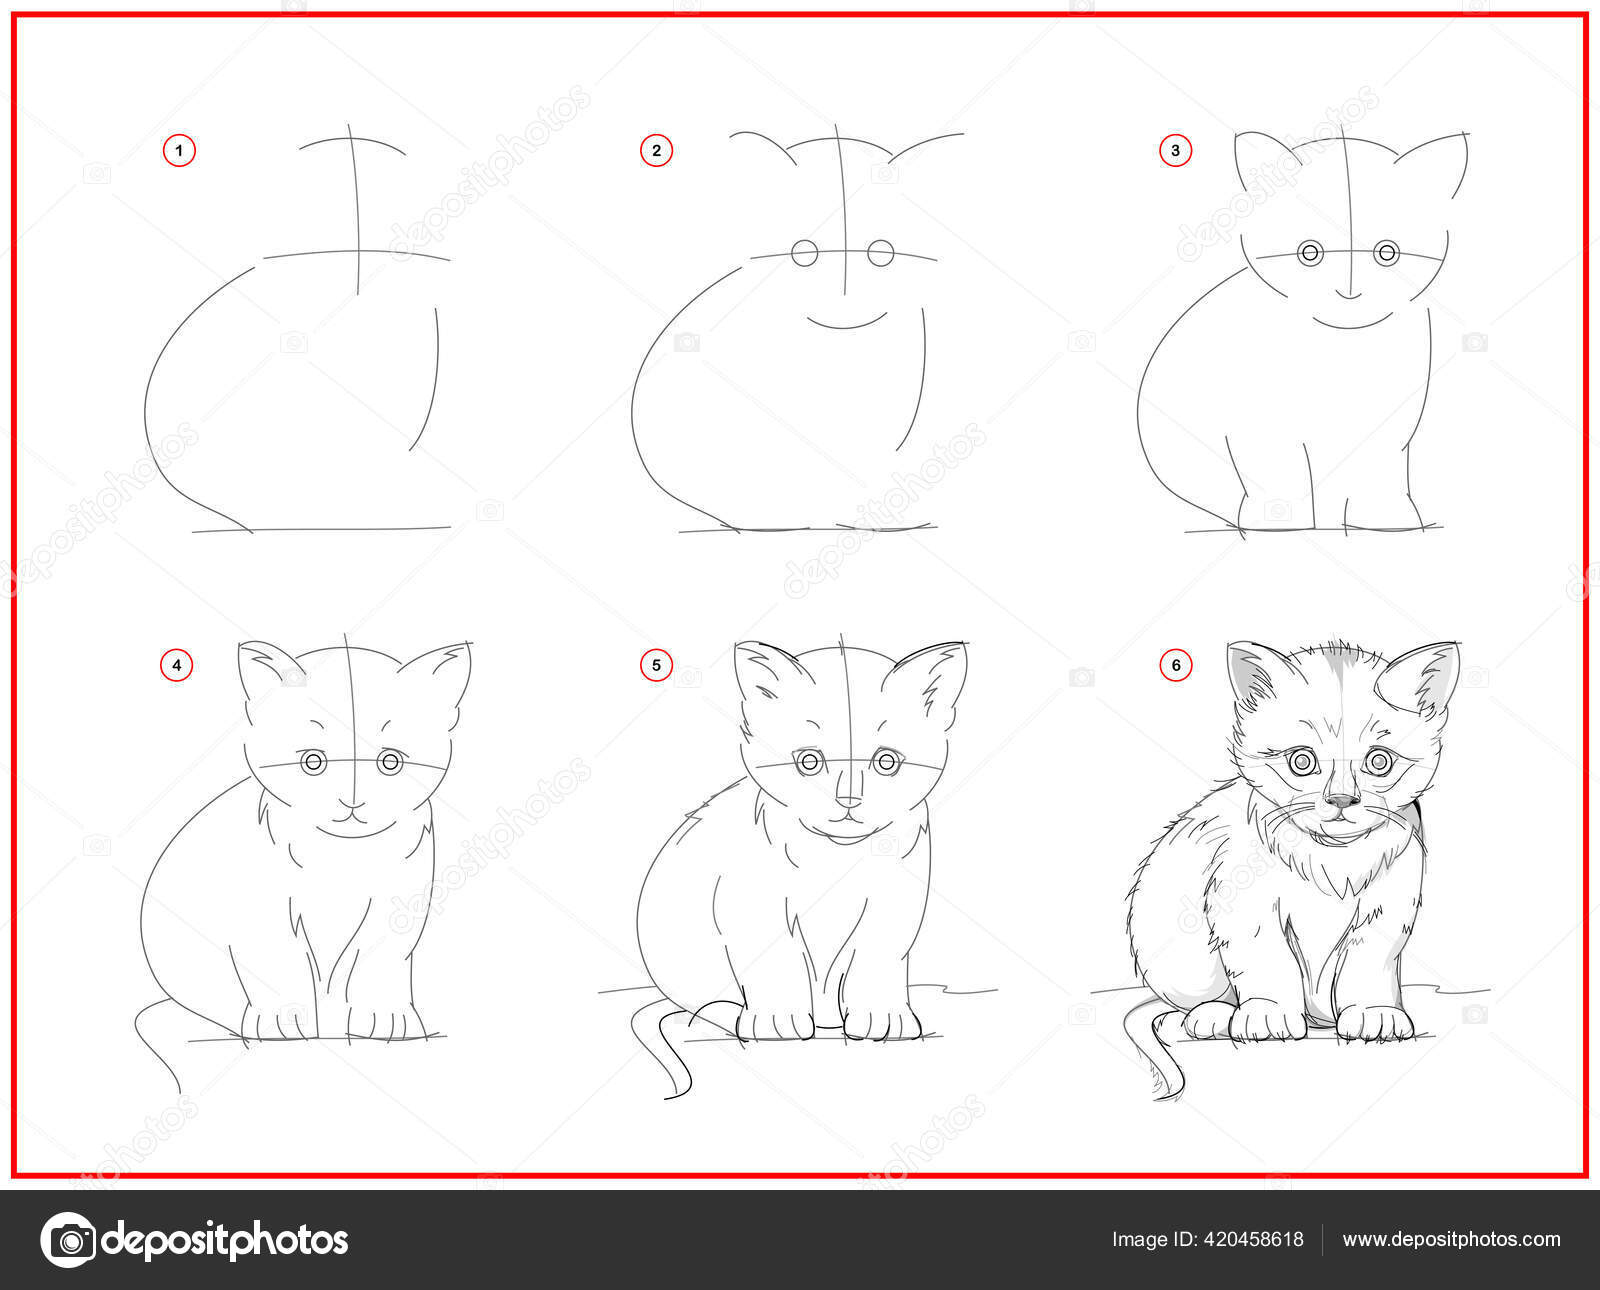 Como Desenhar um Gato Passo a Passo (Tutorial Completo)